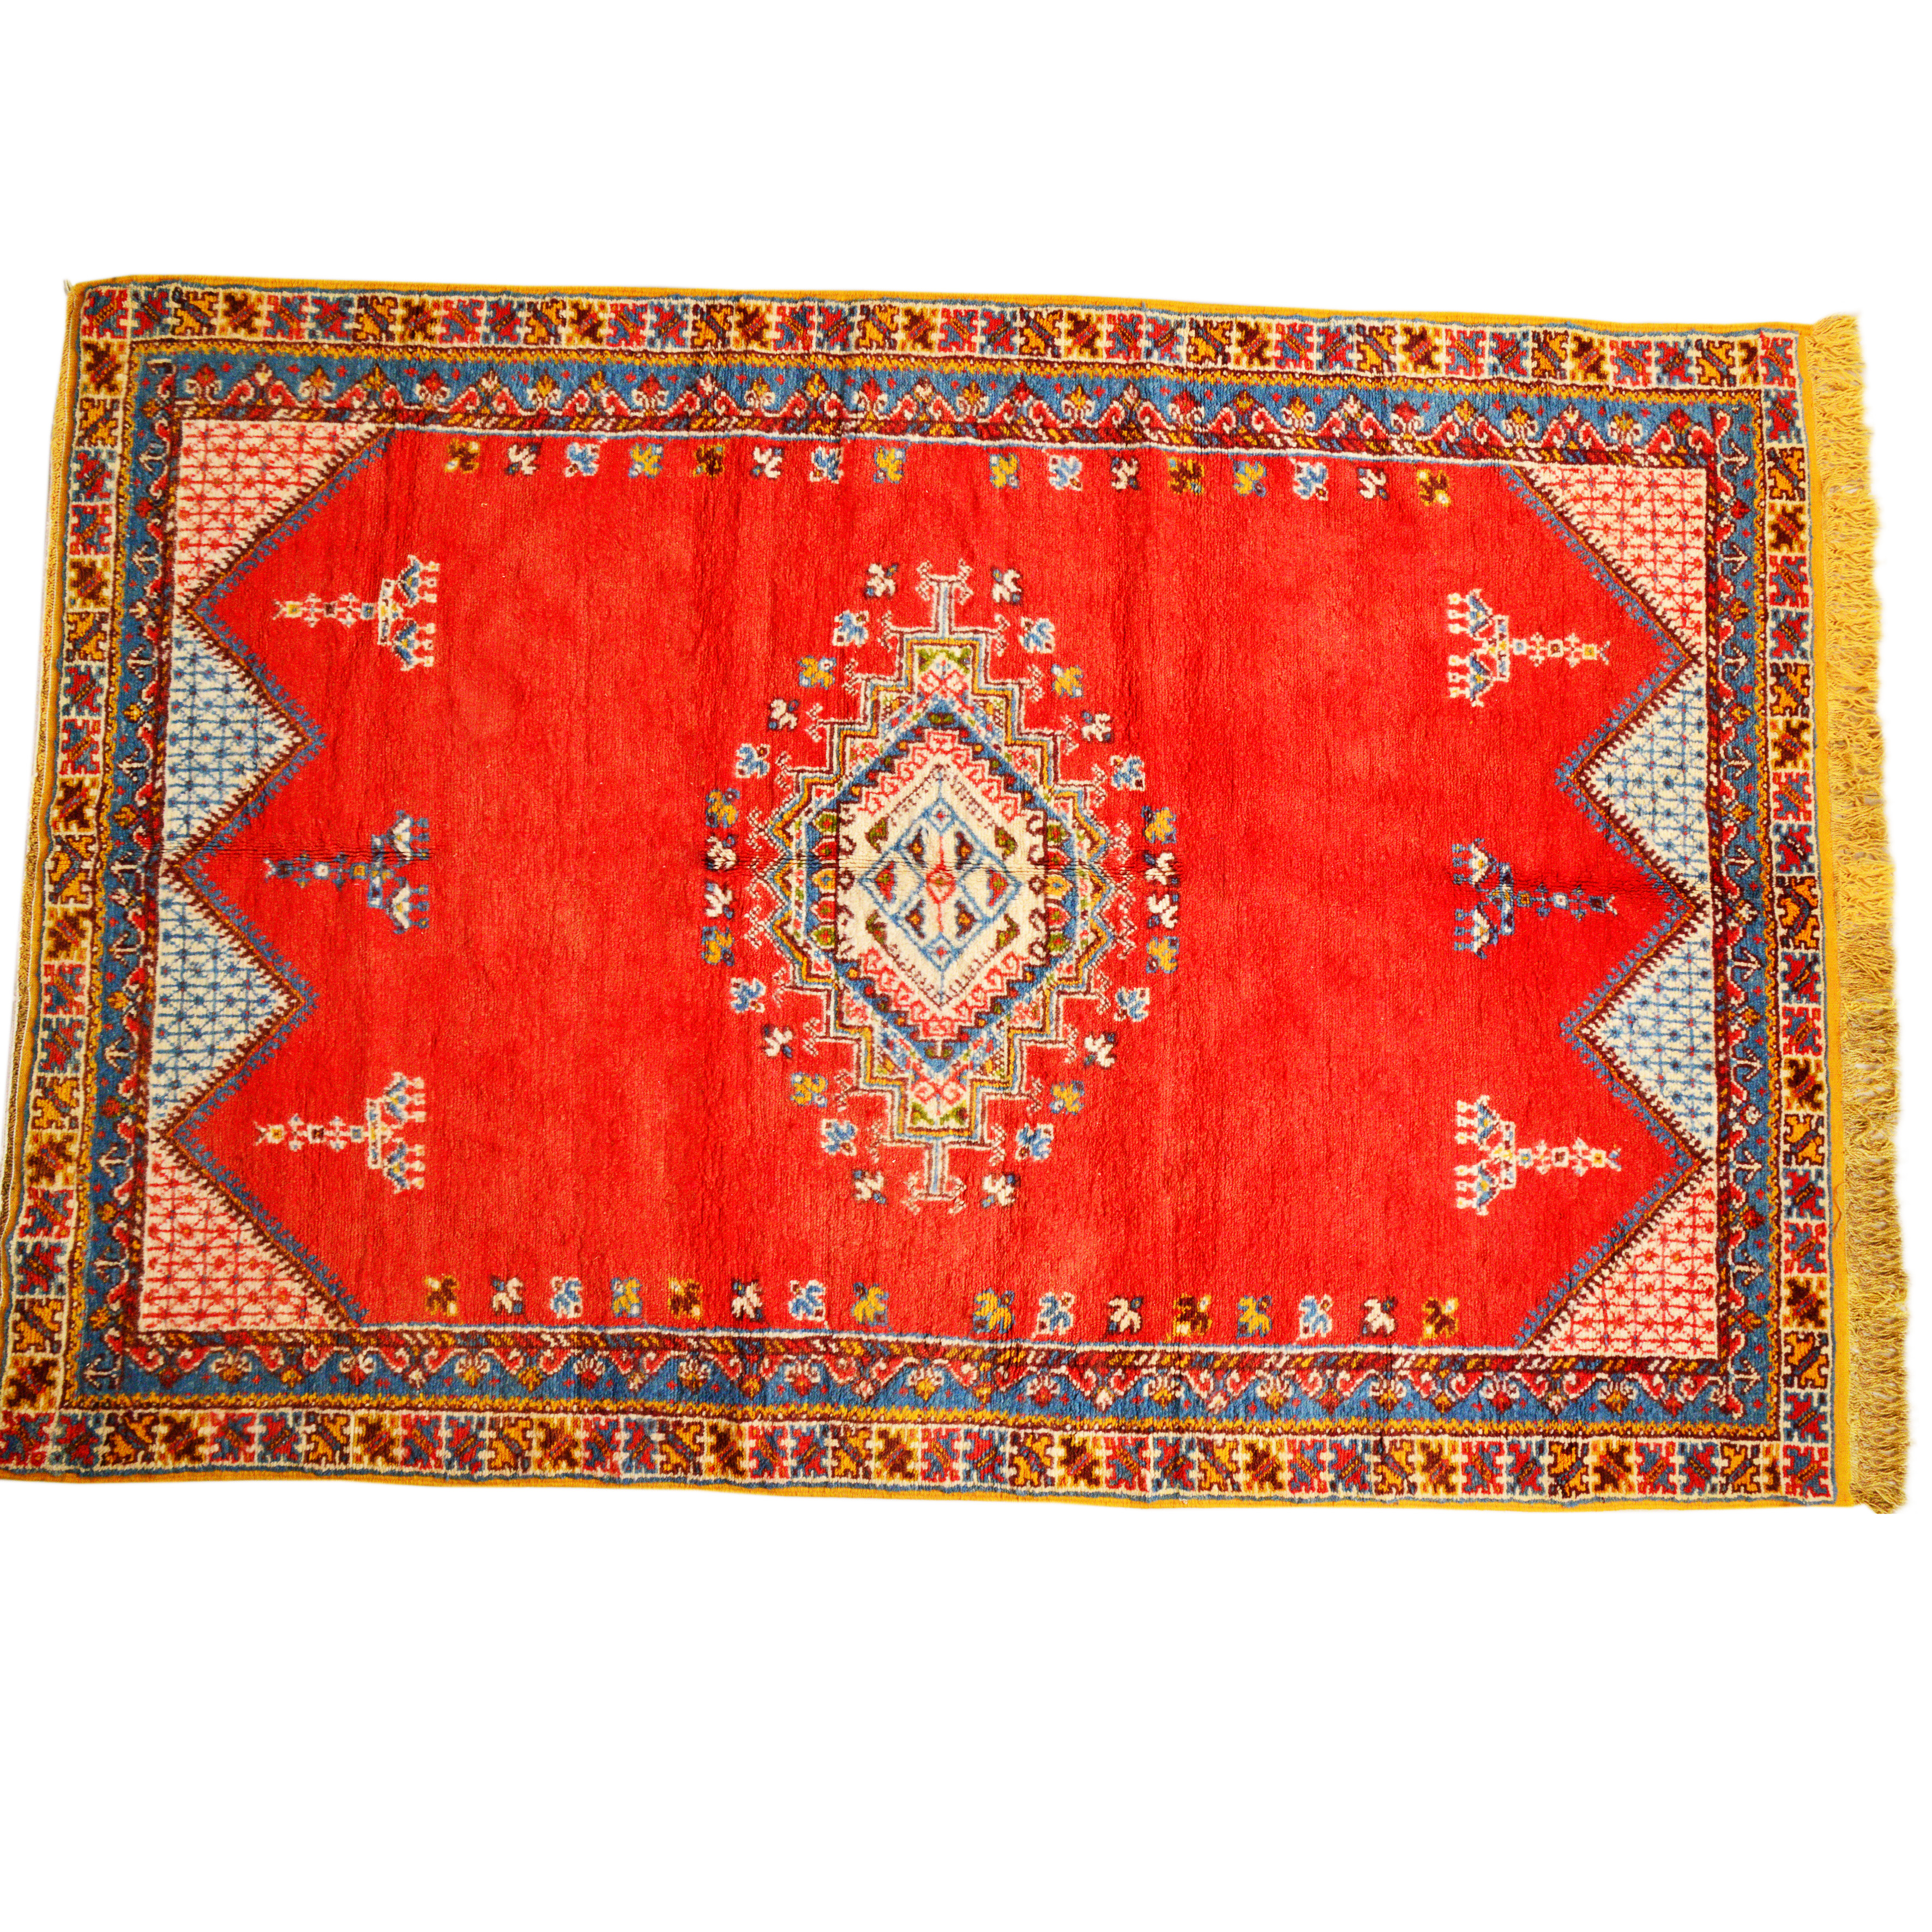 Royal Red Berber Carpet